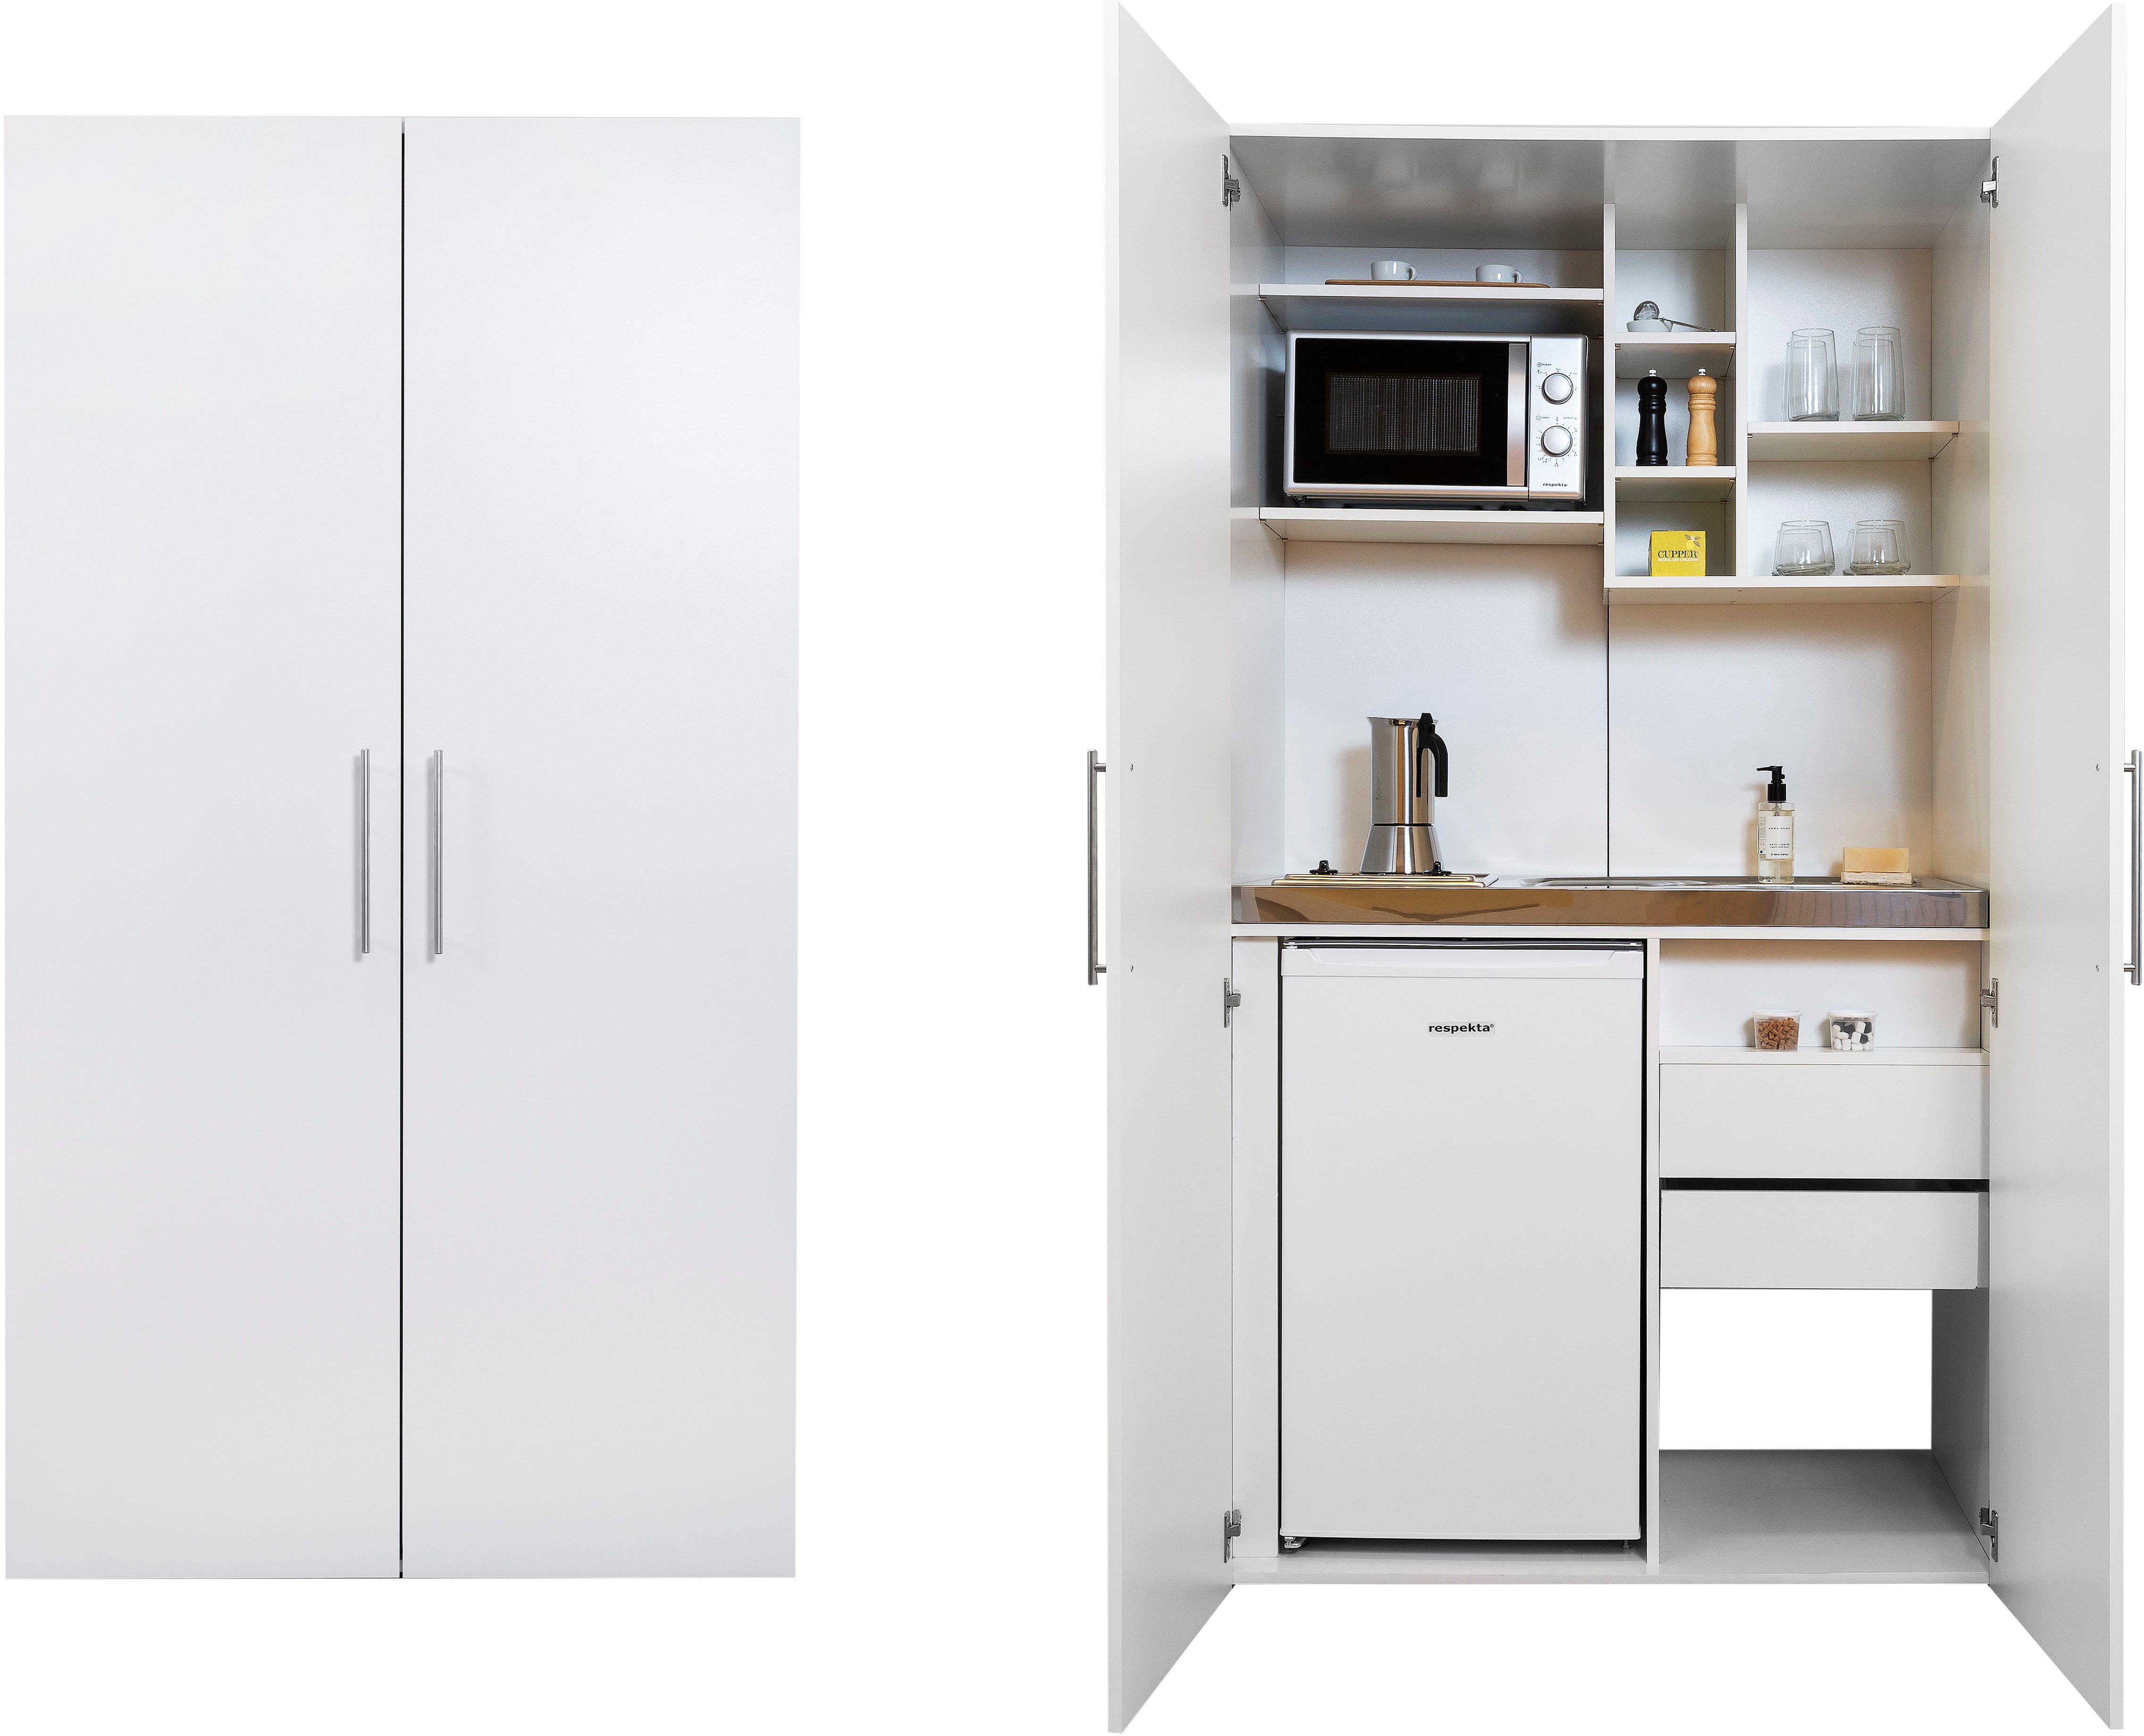 RESPEKTA Miniküche mit Glaskeramik-Kochfeld, Kühlschrank und Mikrowelle  online kaufen | OTTO